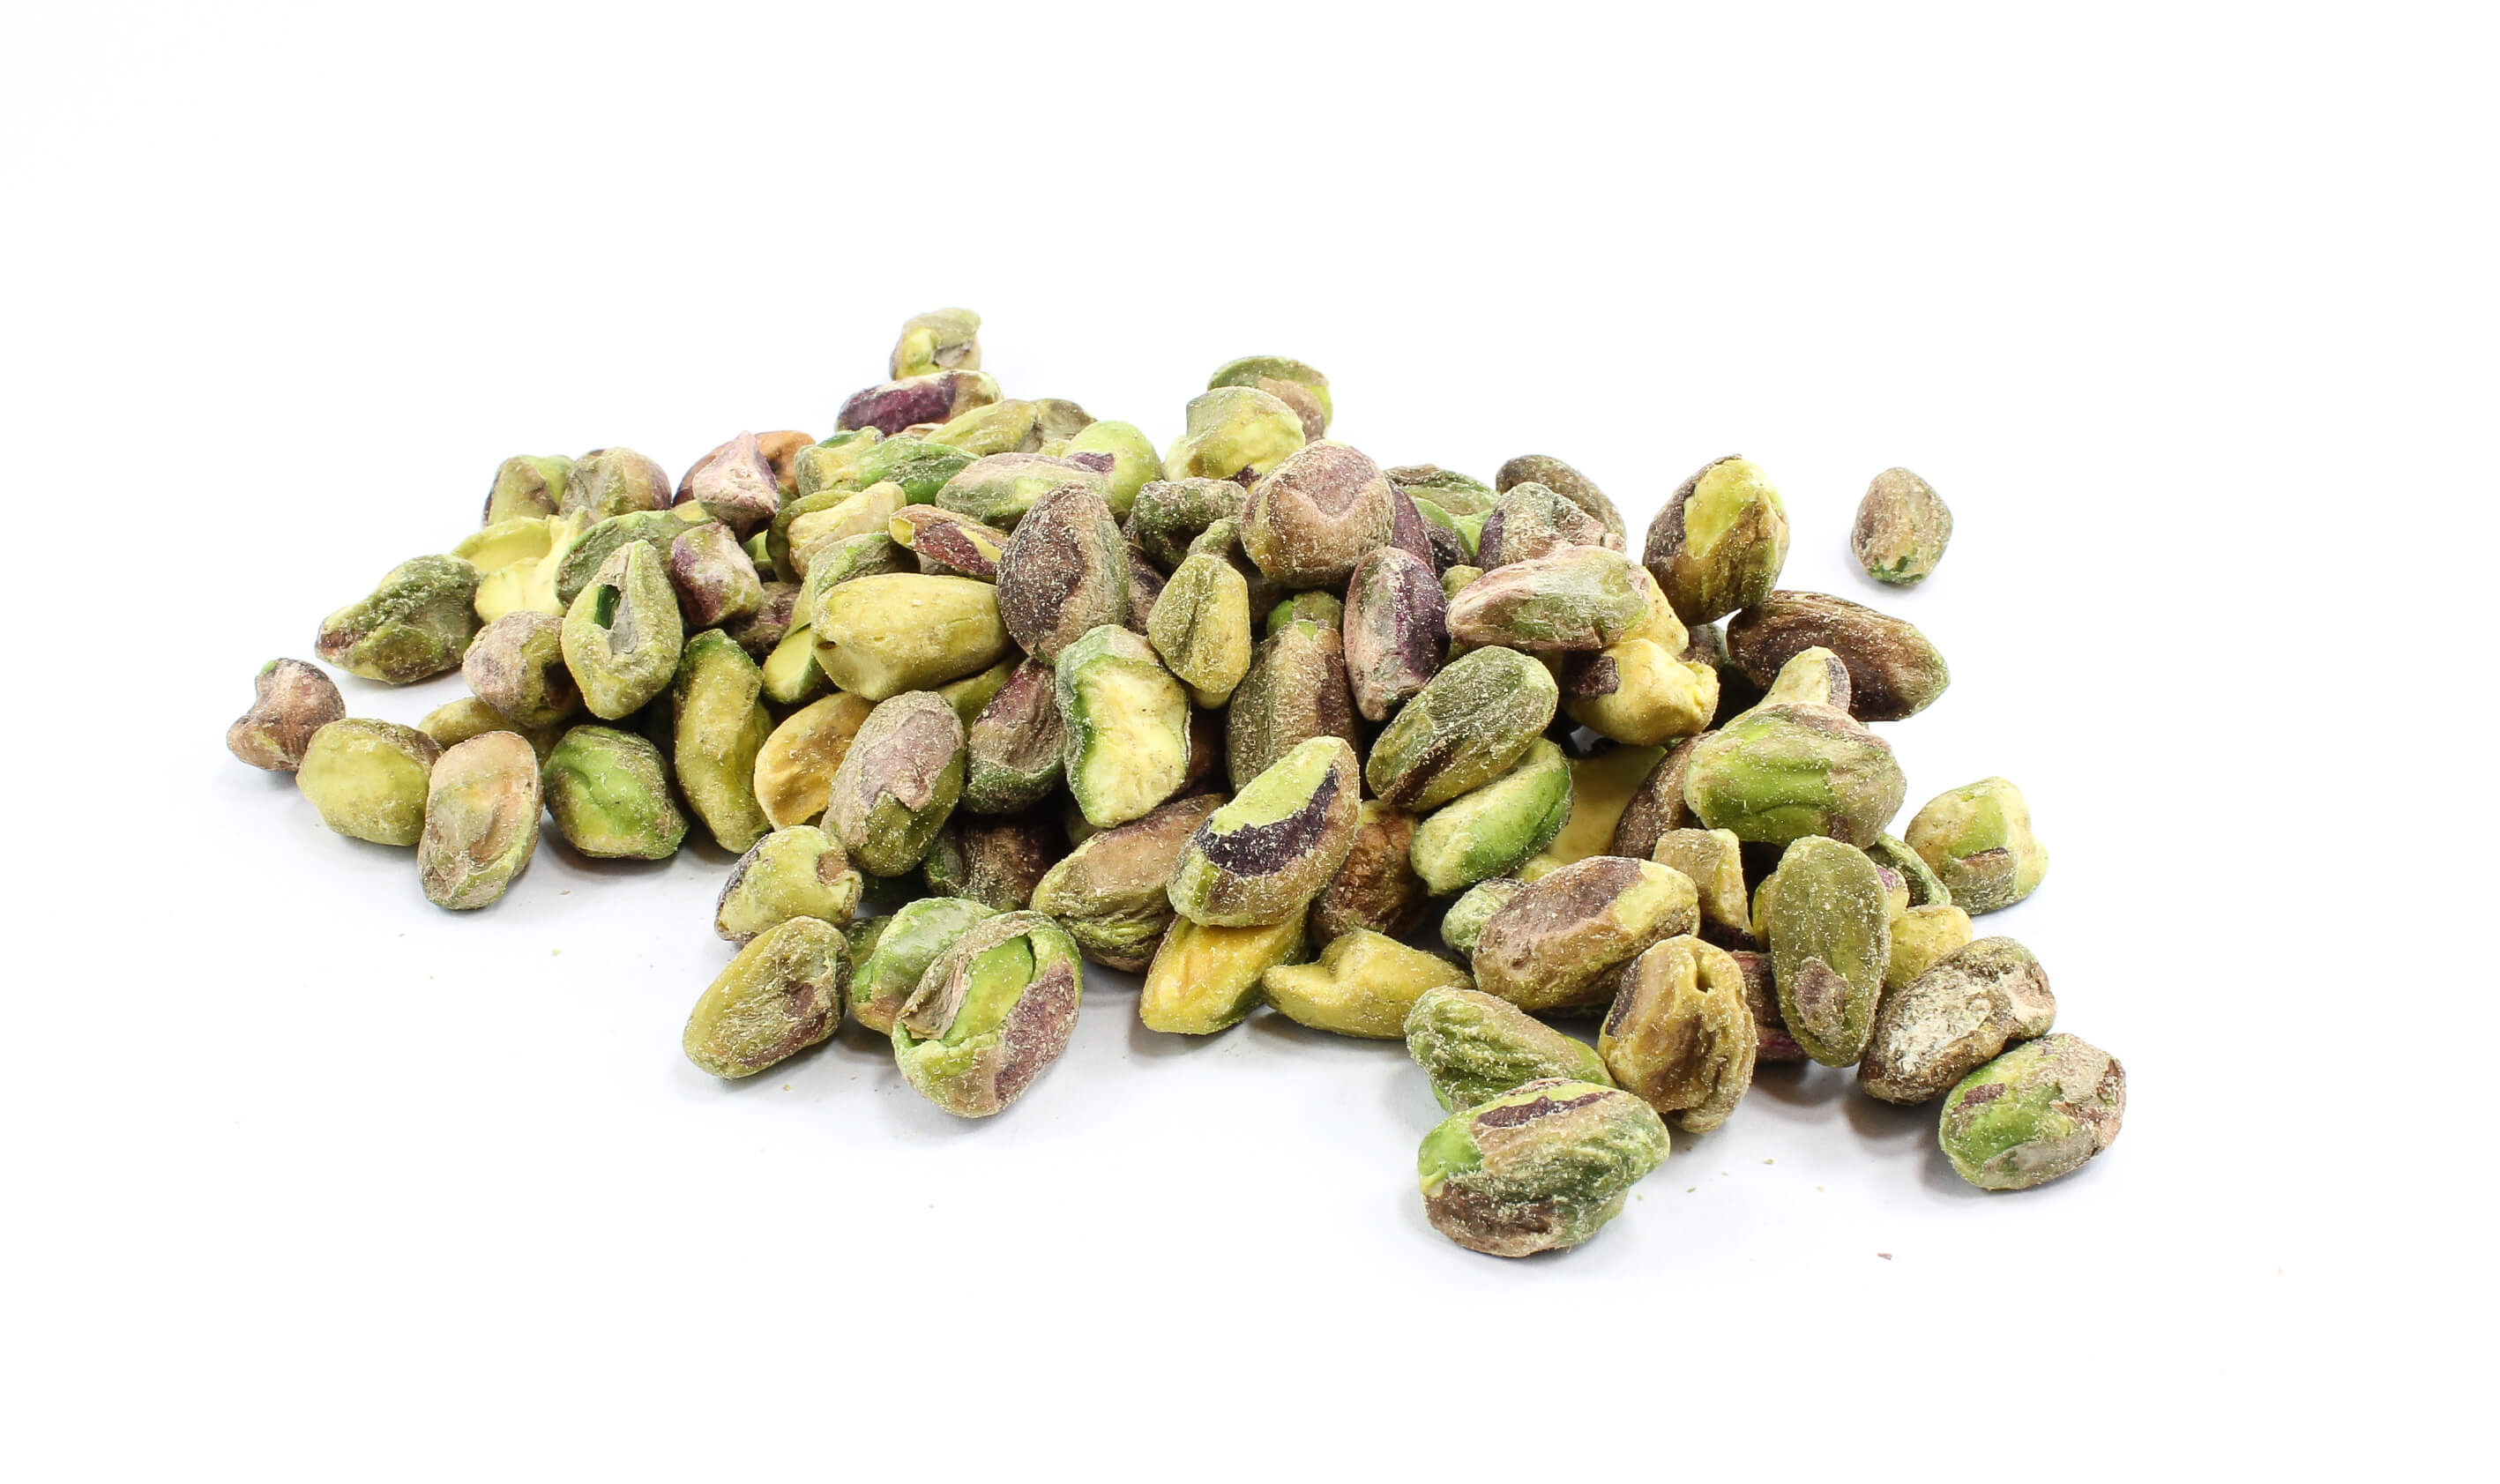 pistachio nuts origin